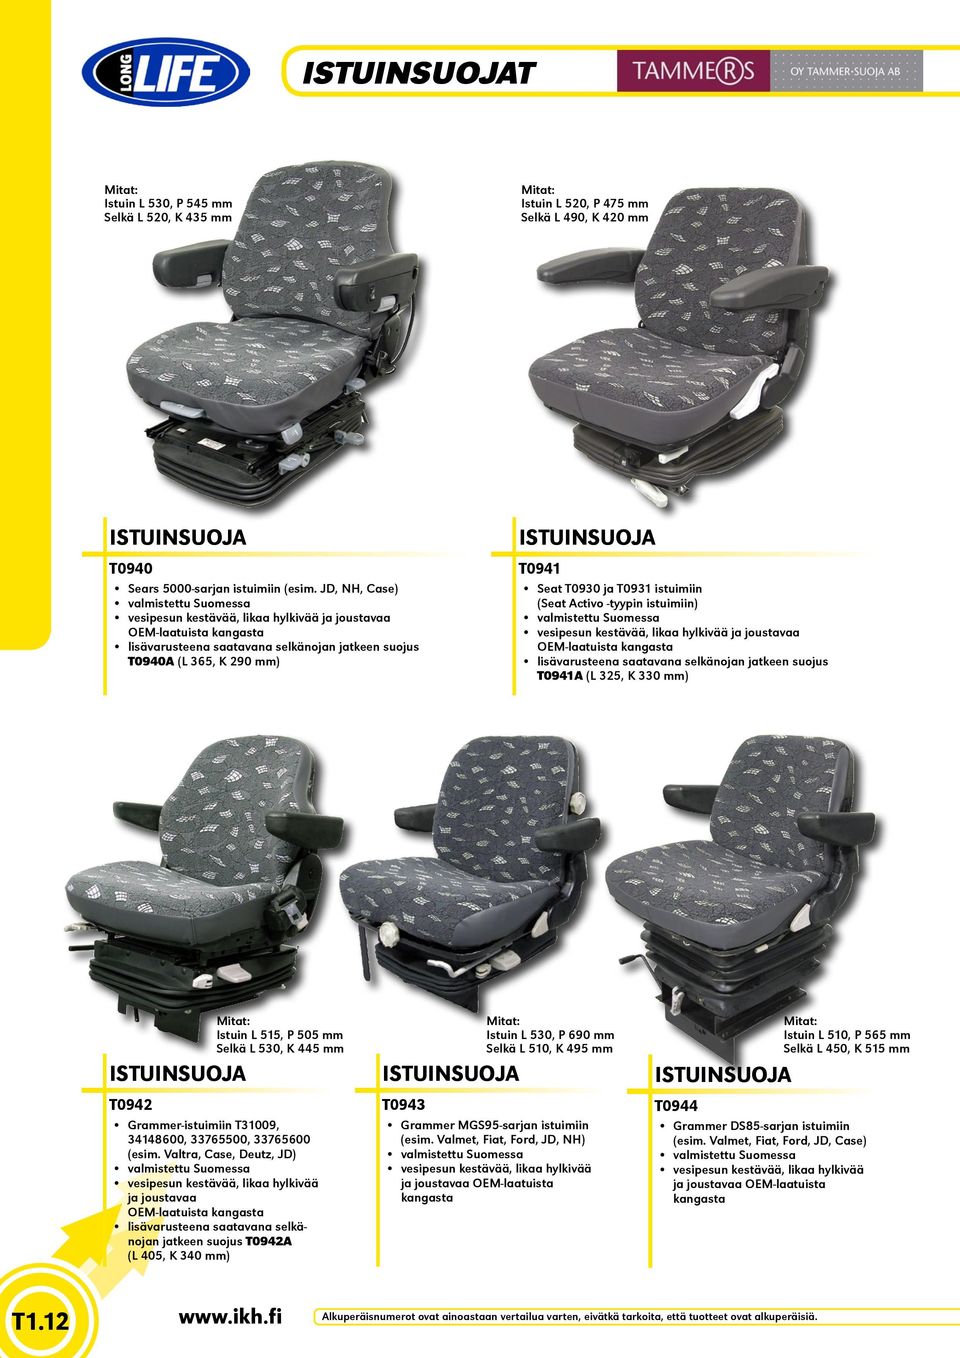 Seat T0930 ja T0931 istuimiin (Seat Activo -tyypin istuimiin) valmistettu Suomessa vesipesun kestävää, likaa hylkivää ja joustavaa OEM-laatuista kangasta lisävarusteena saatavana selkänojan jatkeen